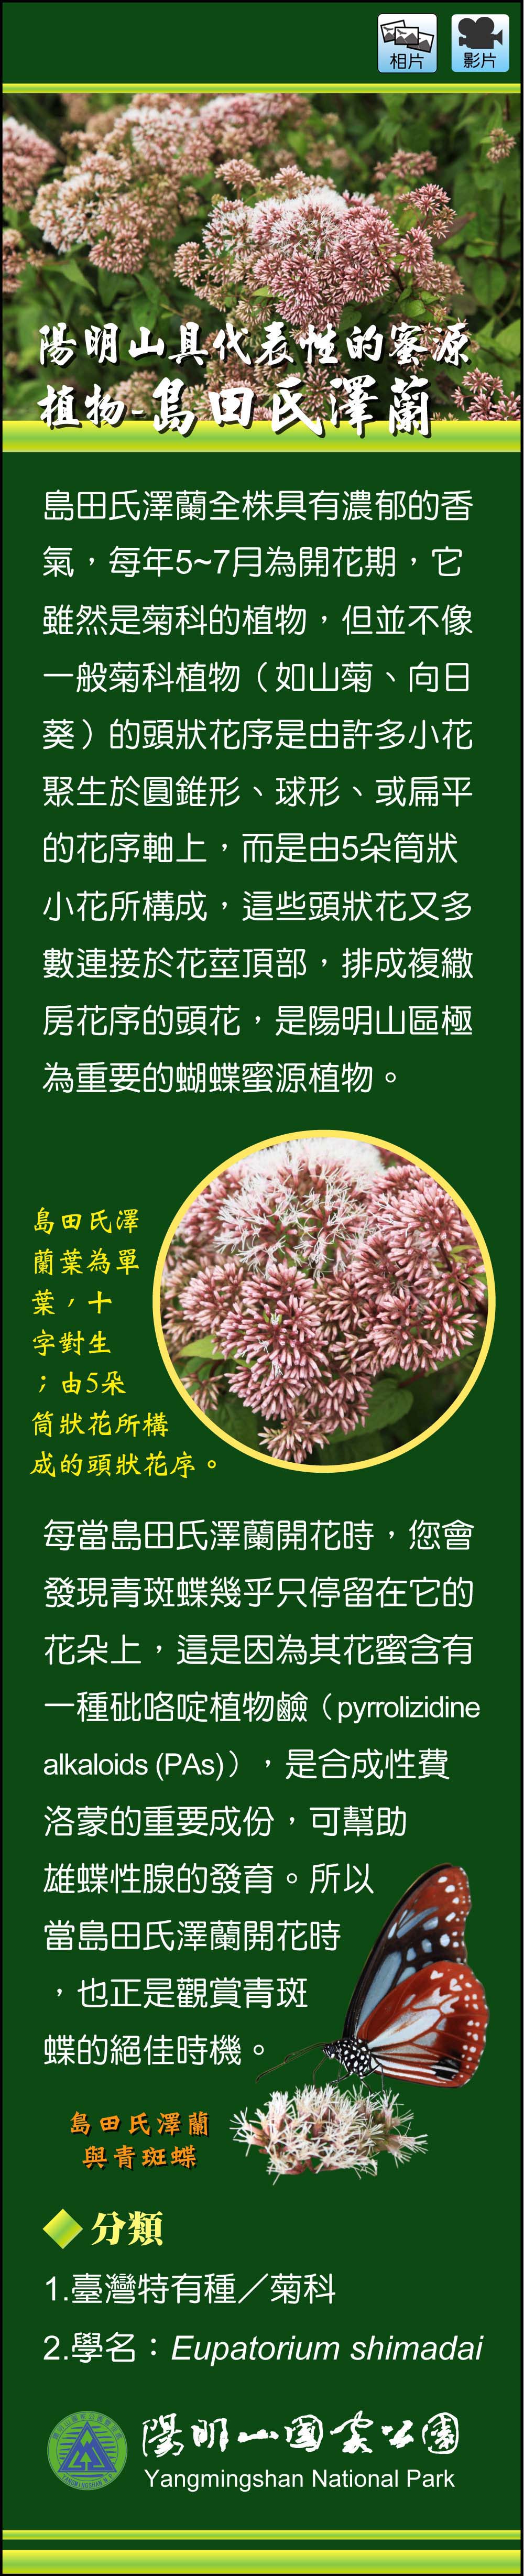 陽明山具代表性的蜜源植物-島田氏澤蘭